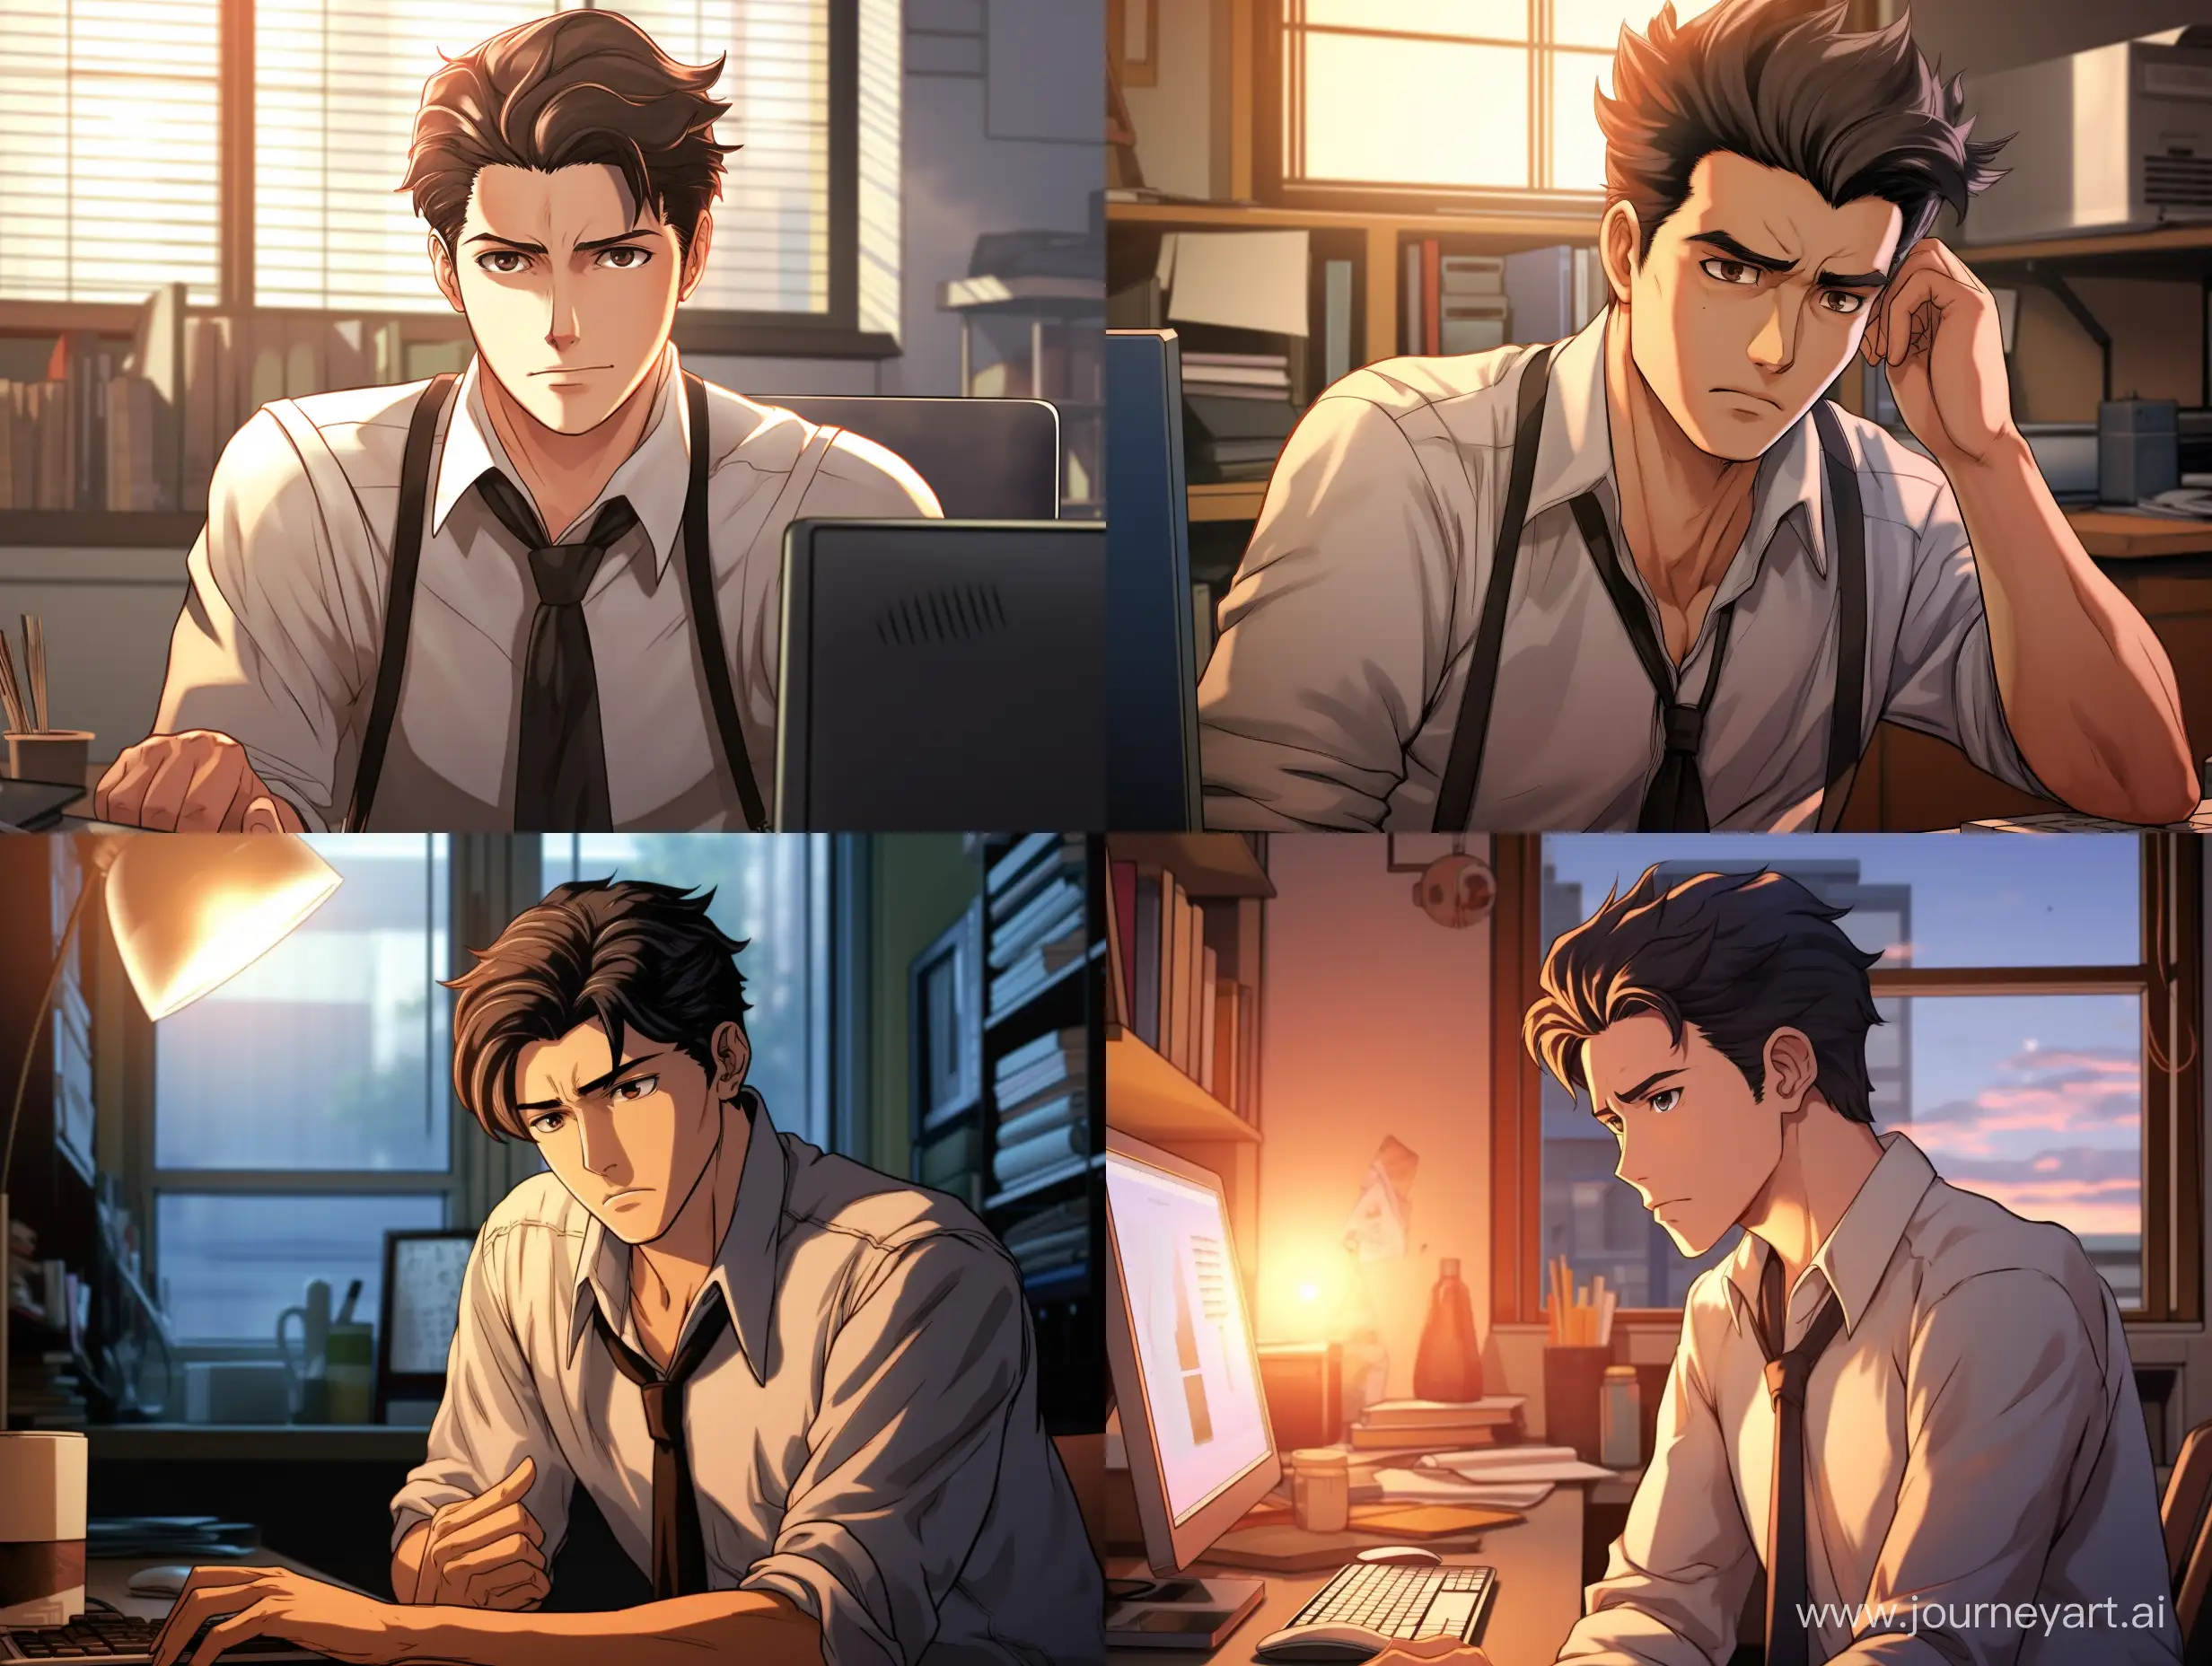 Hazme un comic emotivo donde sale un hombre en una oficina agobiado porque tiene que trabajar mucho que sea un hombre guapo y estilo anime 